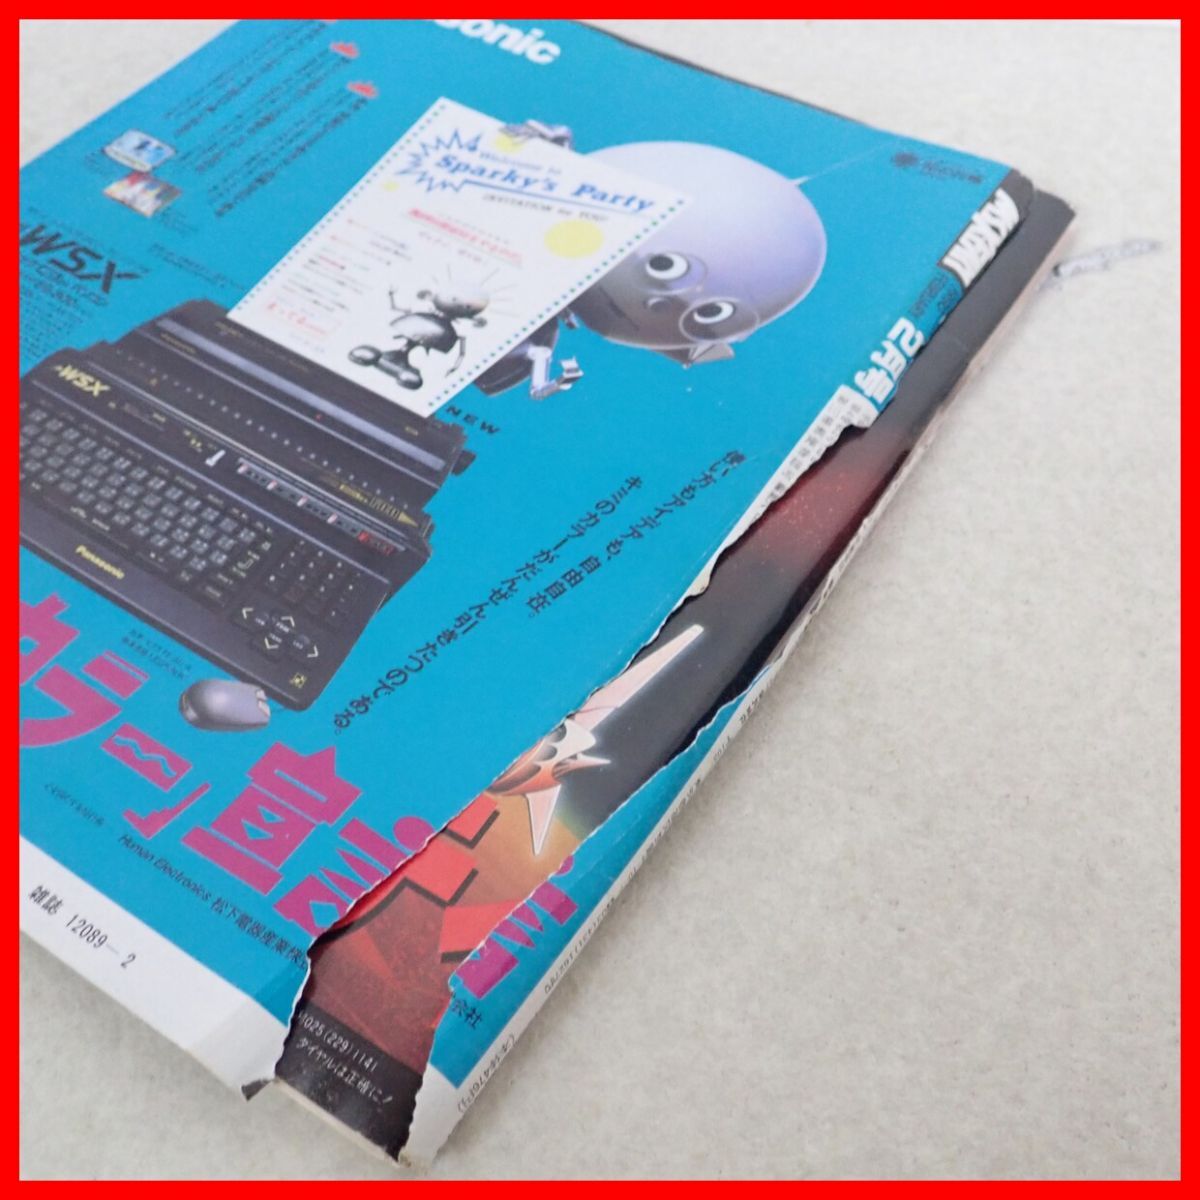 * журнал ежемесячный MSX*FAN M es X * вентилятор 1990 год продажа минут совместно 12 шт. комплект добродетель промежуток книжный магазин [20